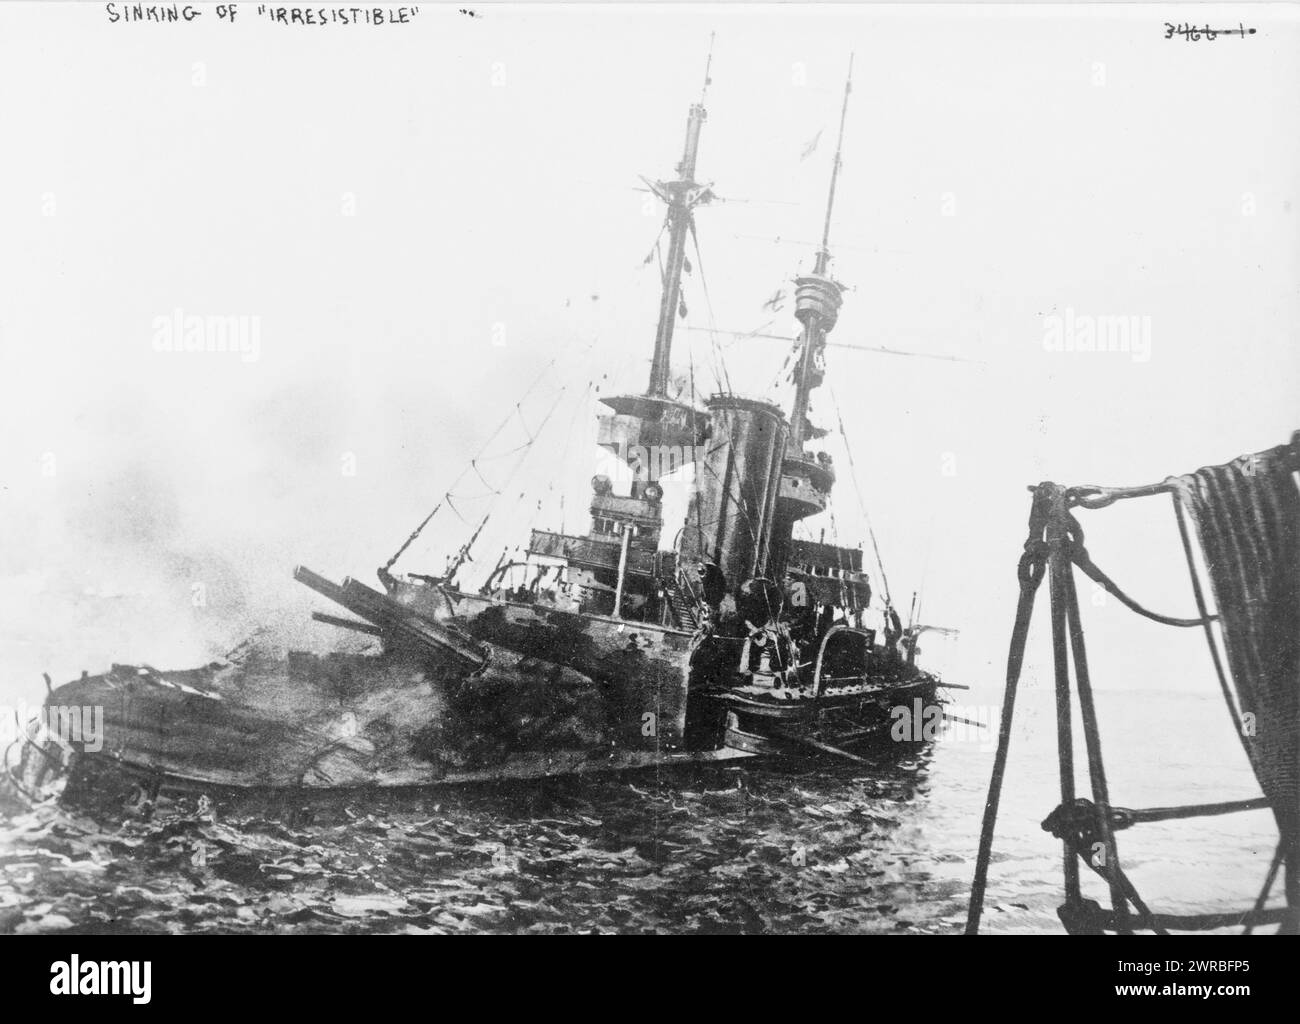 Sinking of 'Irresistible', Sinking of British ship, Irresistible., 1915 May 4., World War, 1914-1918, Naval operations, British, Photographic prints, 1910-1920., Photographic prints, 1910-1920, 1 photographic print Stock Photo